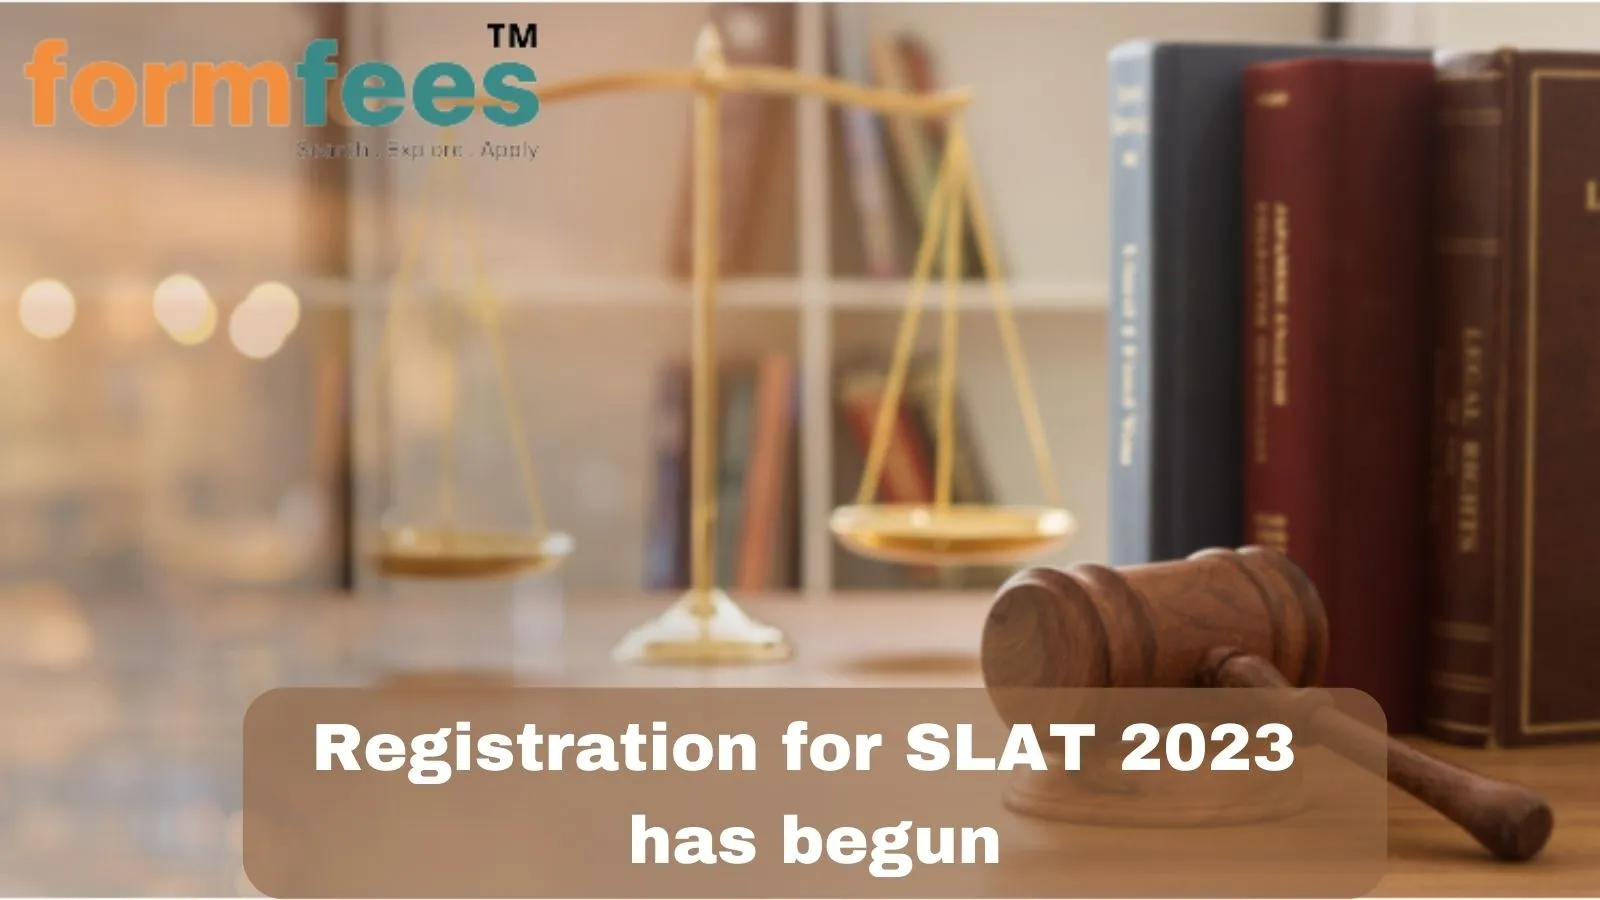 Registration for SLAT 2023 has begun